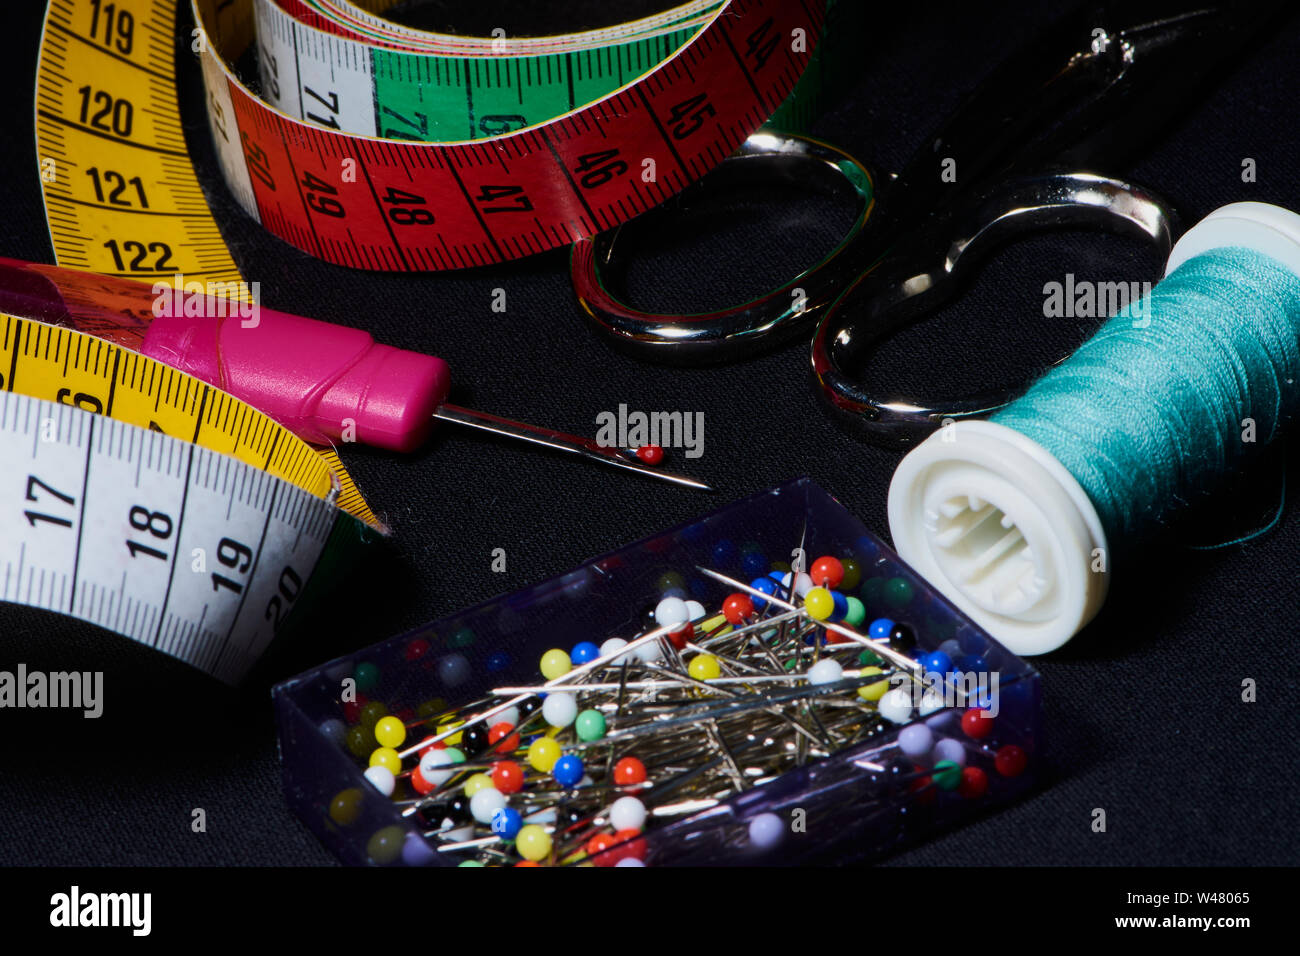 Couleur macro photo de différents outils de couture comme des ciseaux, des épingles, du fil à coudre sur un fond sombre Banque D'Images